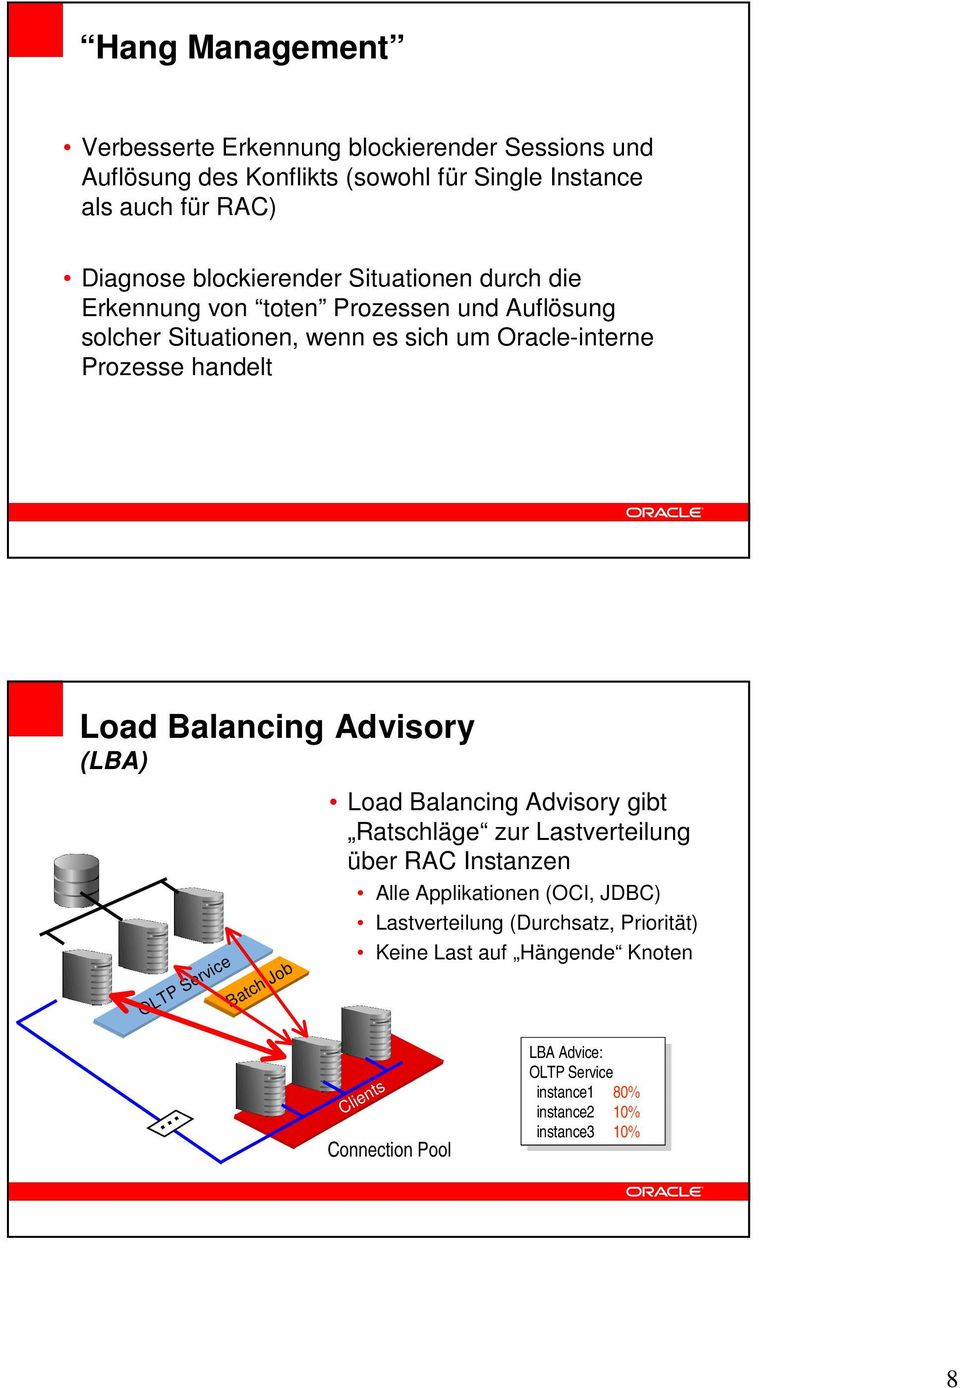 Job Load Balancing Advisory gibt Ratschläge zur Lastverteilung über RAC Instanzen Alle Applikationen (OCI, JDBC) Lastverteilung (Durchsatz, Priorität) Keine Last auf